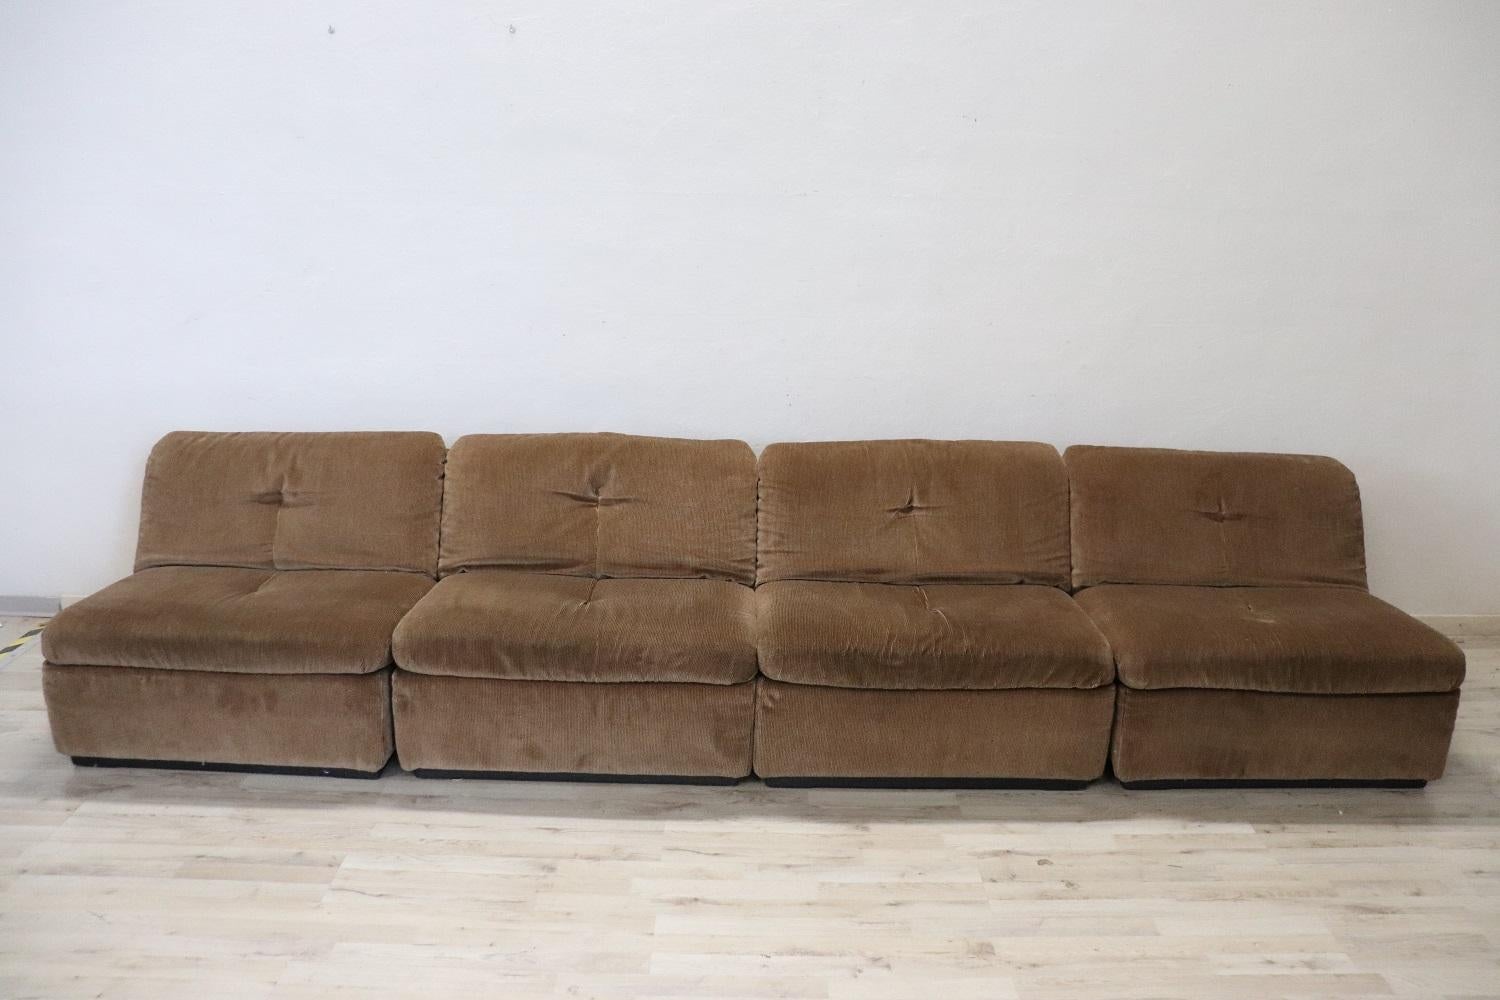 Seltenes italienisches Design-Modulsofa, 1970er Jahre, aus braunem Samt. Das Sofa ist modular aufgebaut und setzt sich aus vier Sesseln zusammen. Die Marke Busnelli ist auf jedem Sessel vorhanden. Die angegebenen Maße beziehen sich auf jeden